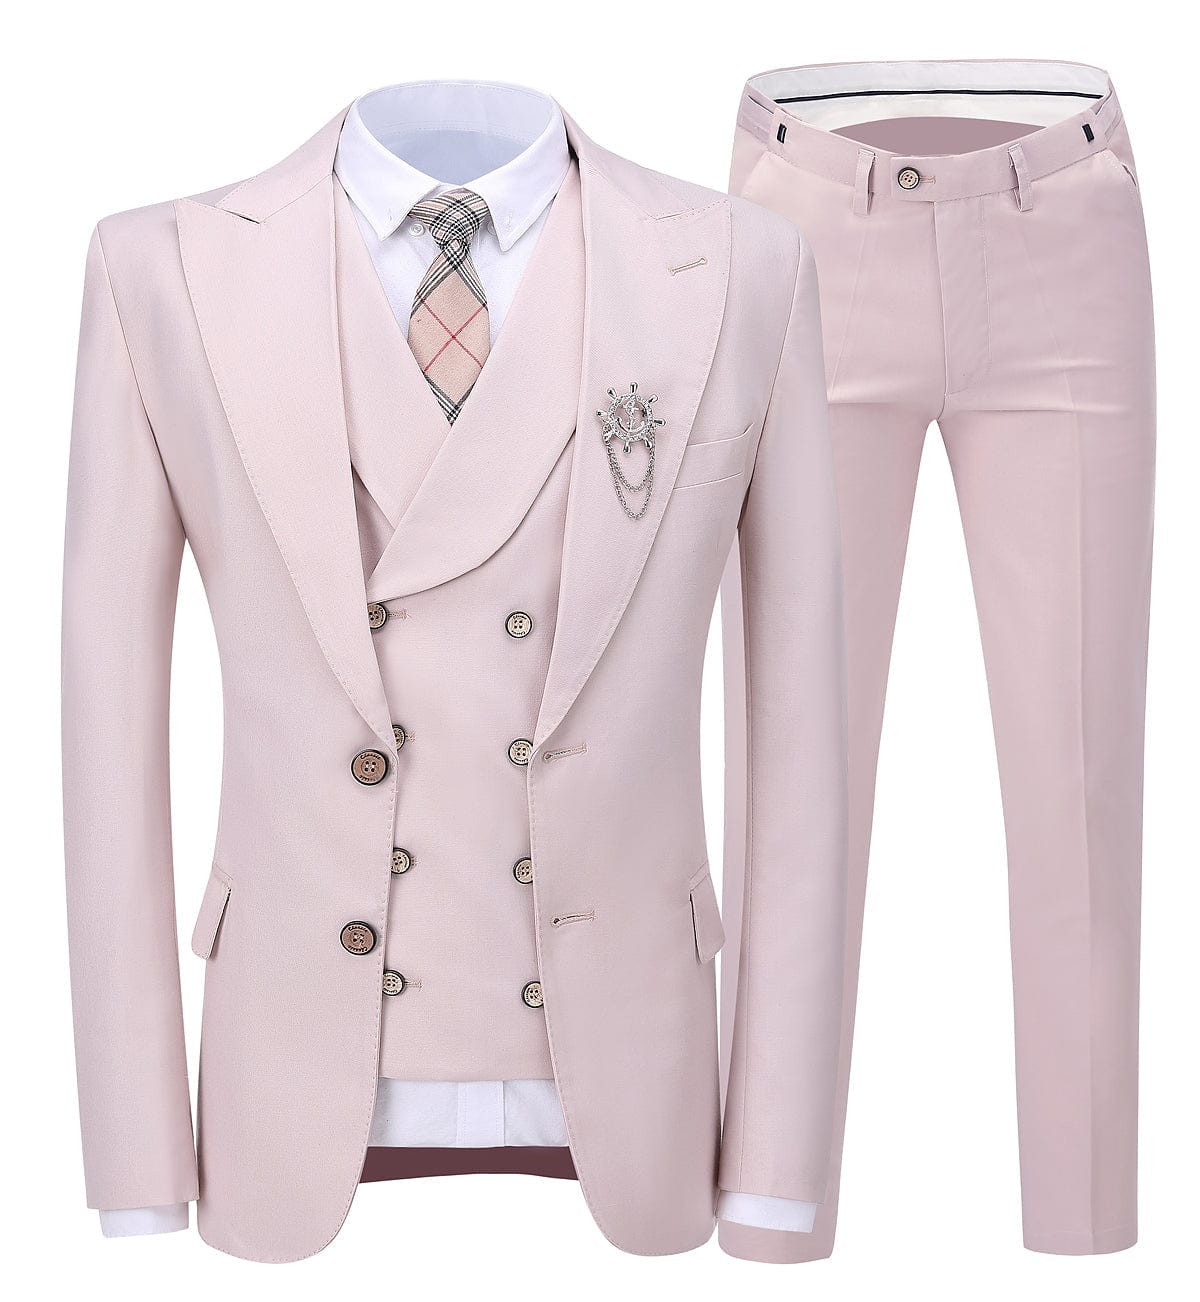 ceehuteey 3 Pieces Business Mens Suit Peak Lapel Blazer Formal (Blazer+vest+Pants)